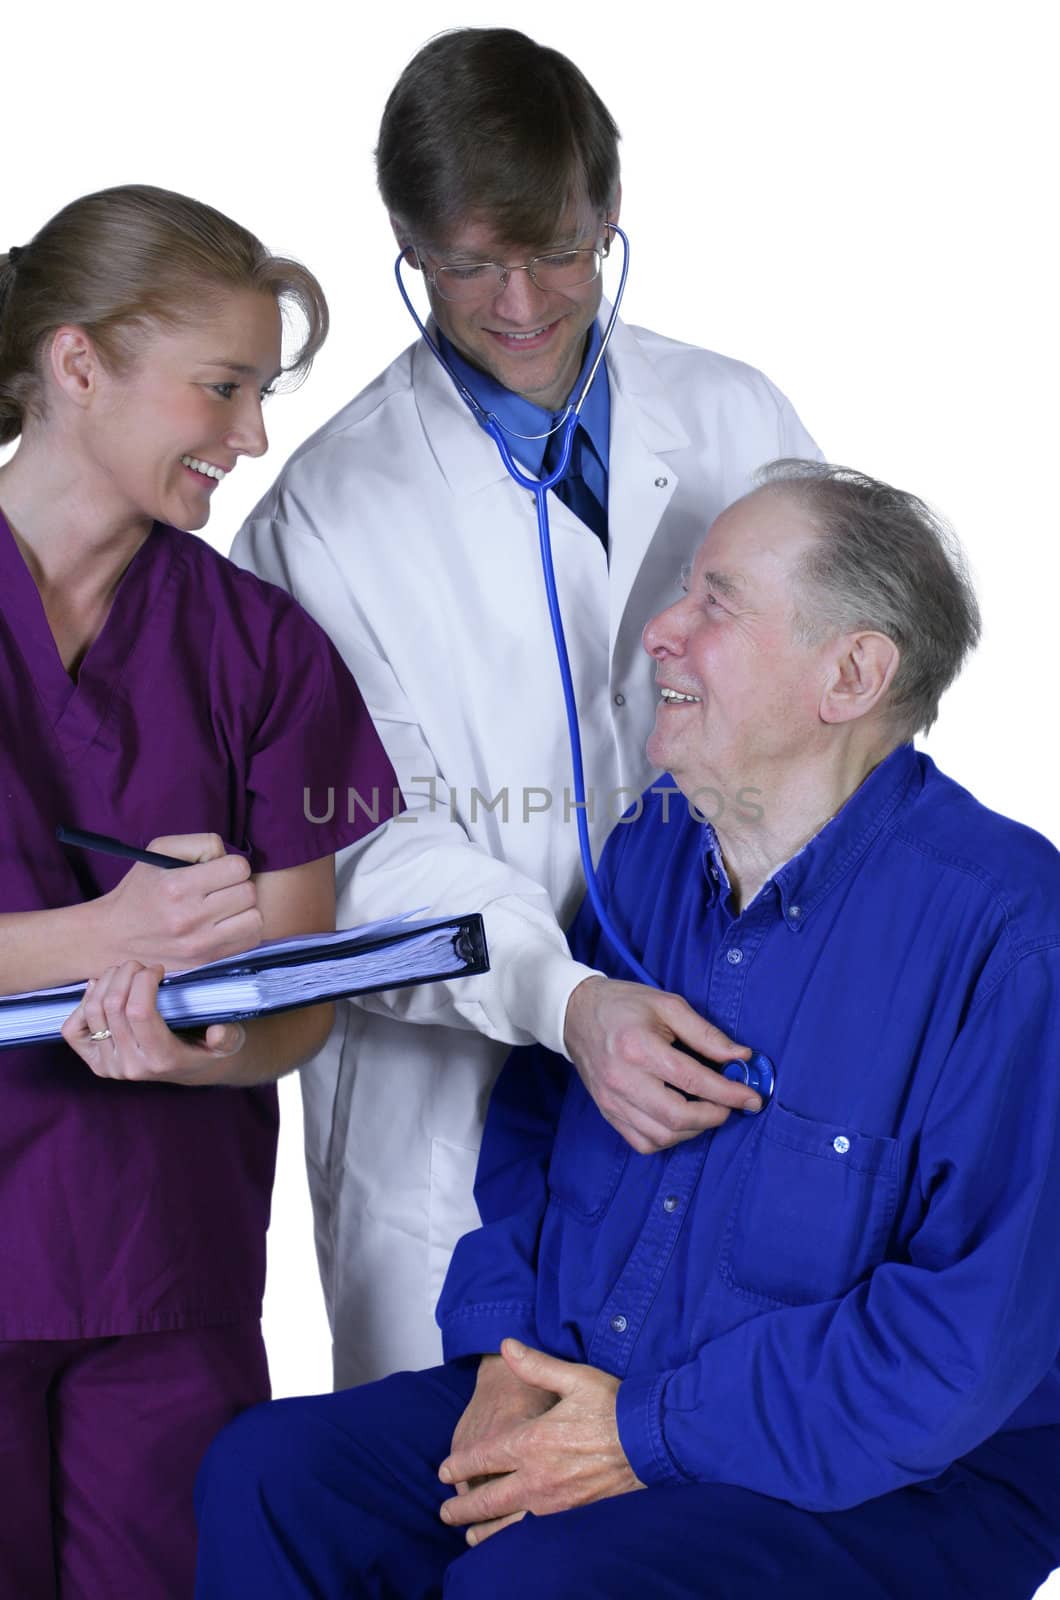 Doctor and nurse examining elderly patient by jarenwicklund